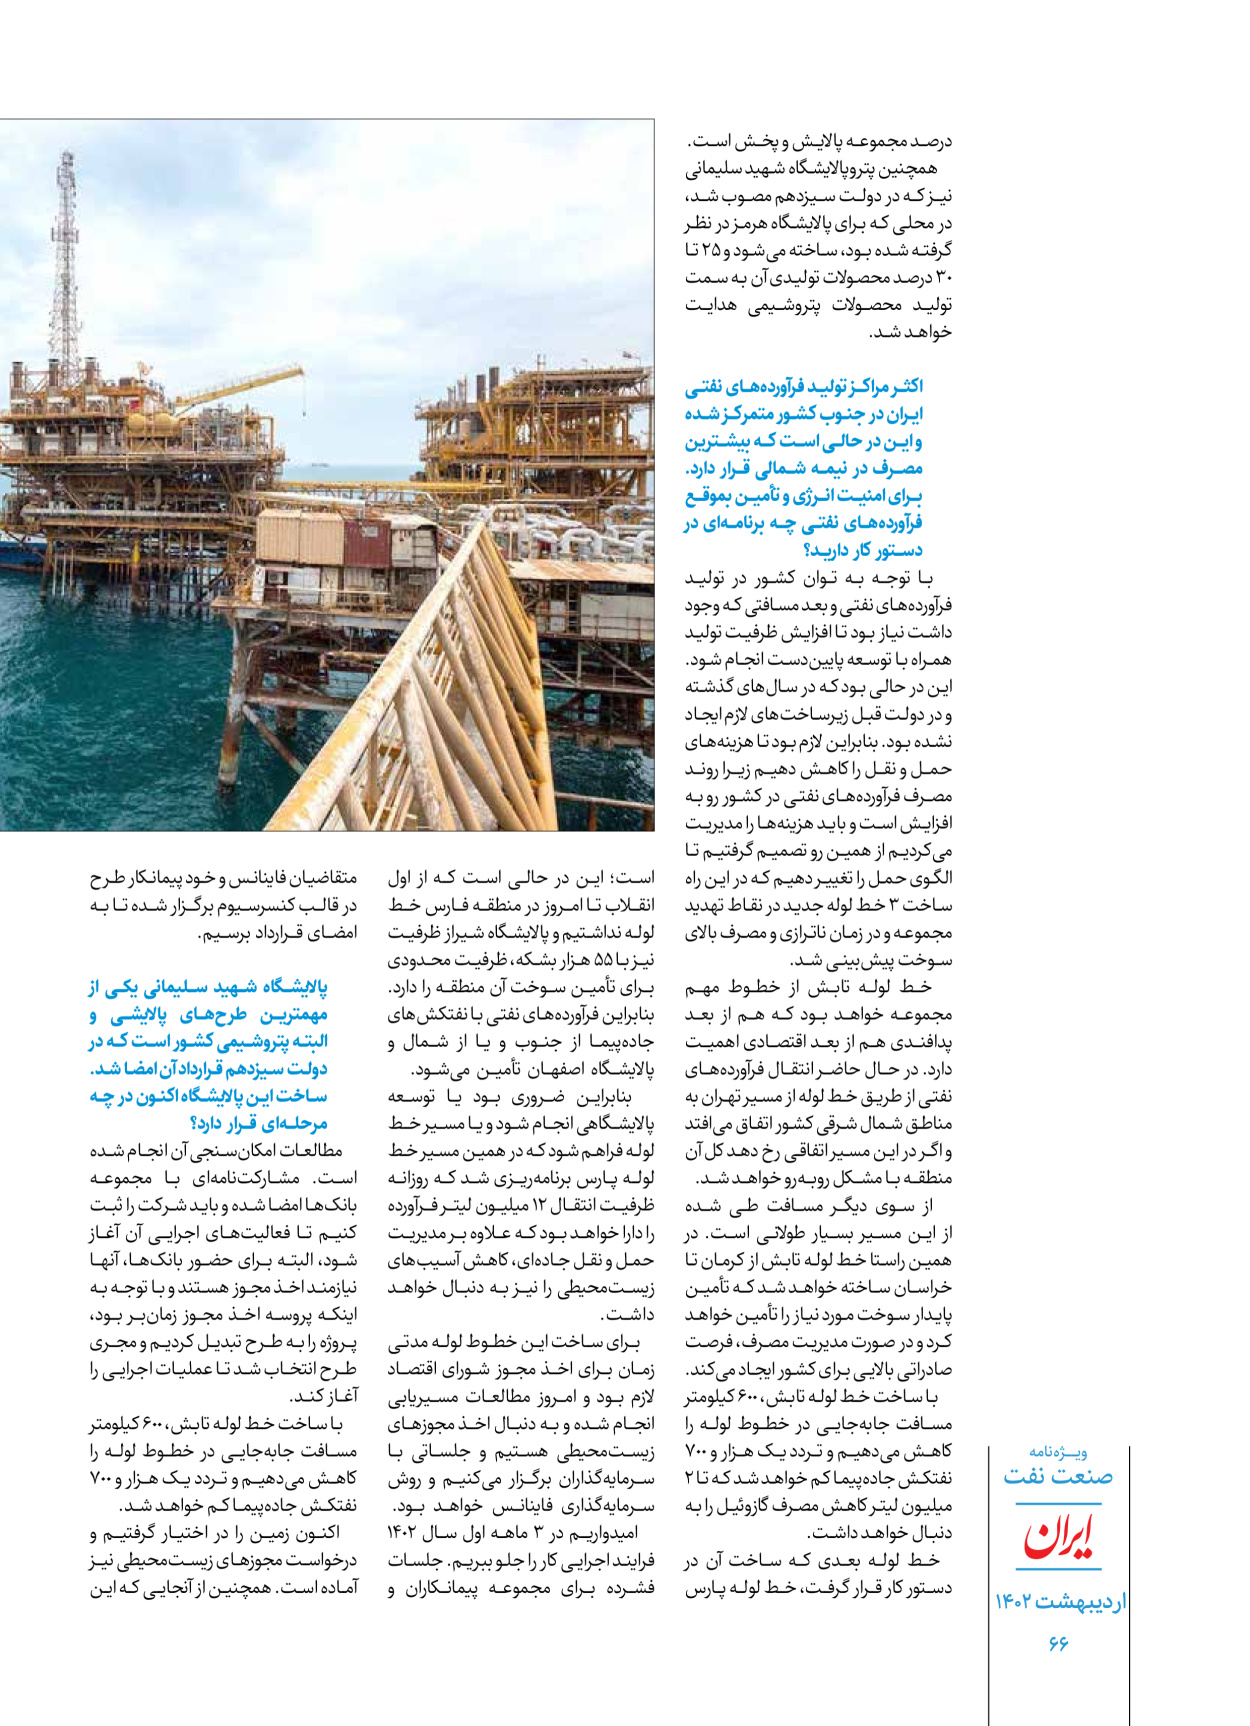 روزنامه ایران - ویژه نامه ویژه نفت - ۳۰ اردیبهشت ۱۴۰۲ - صفحه ۶۶